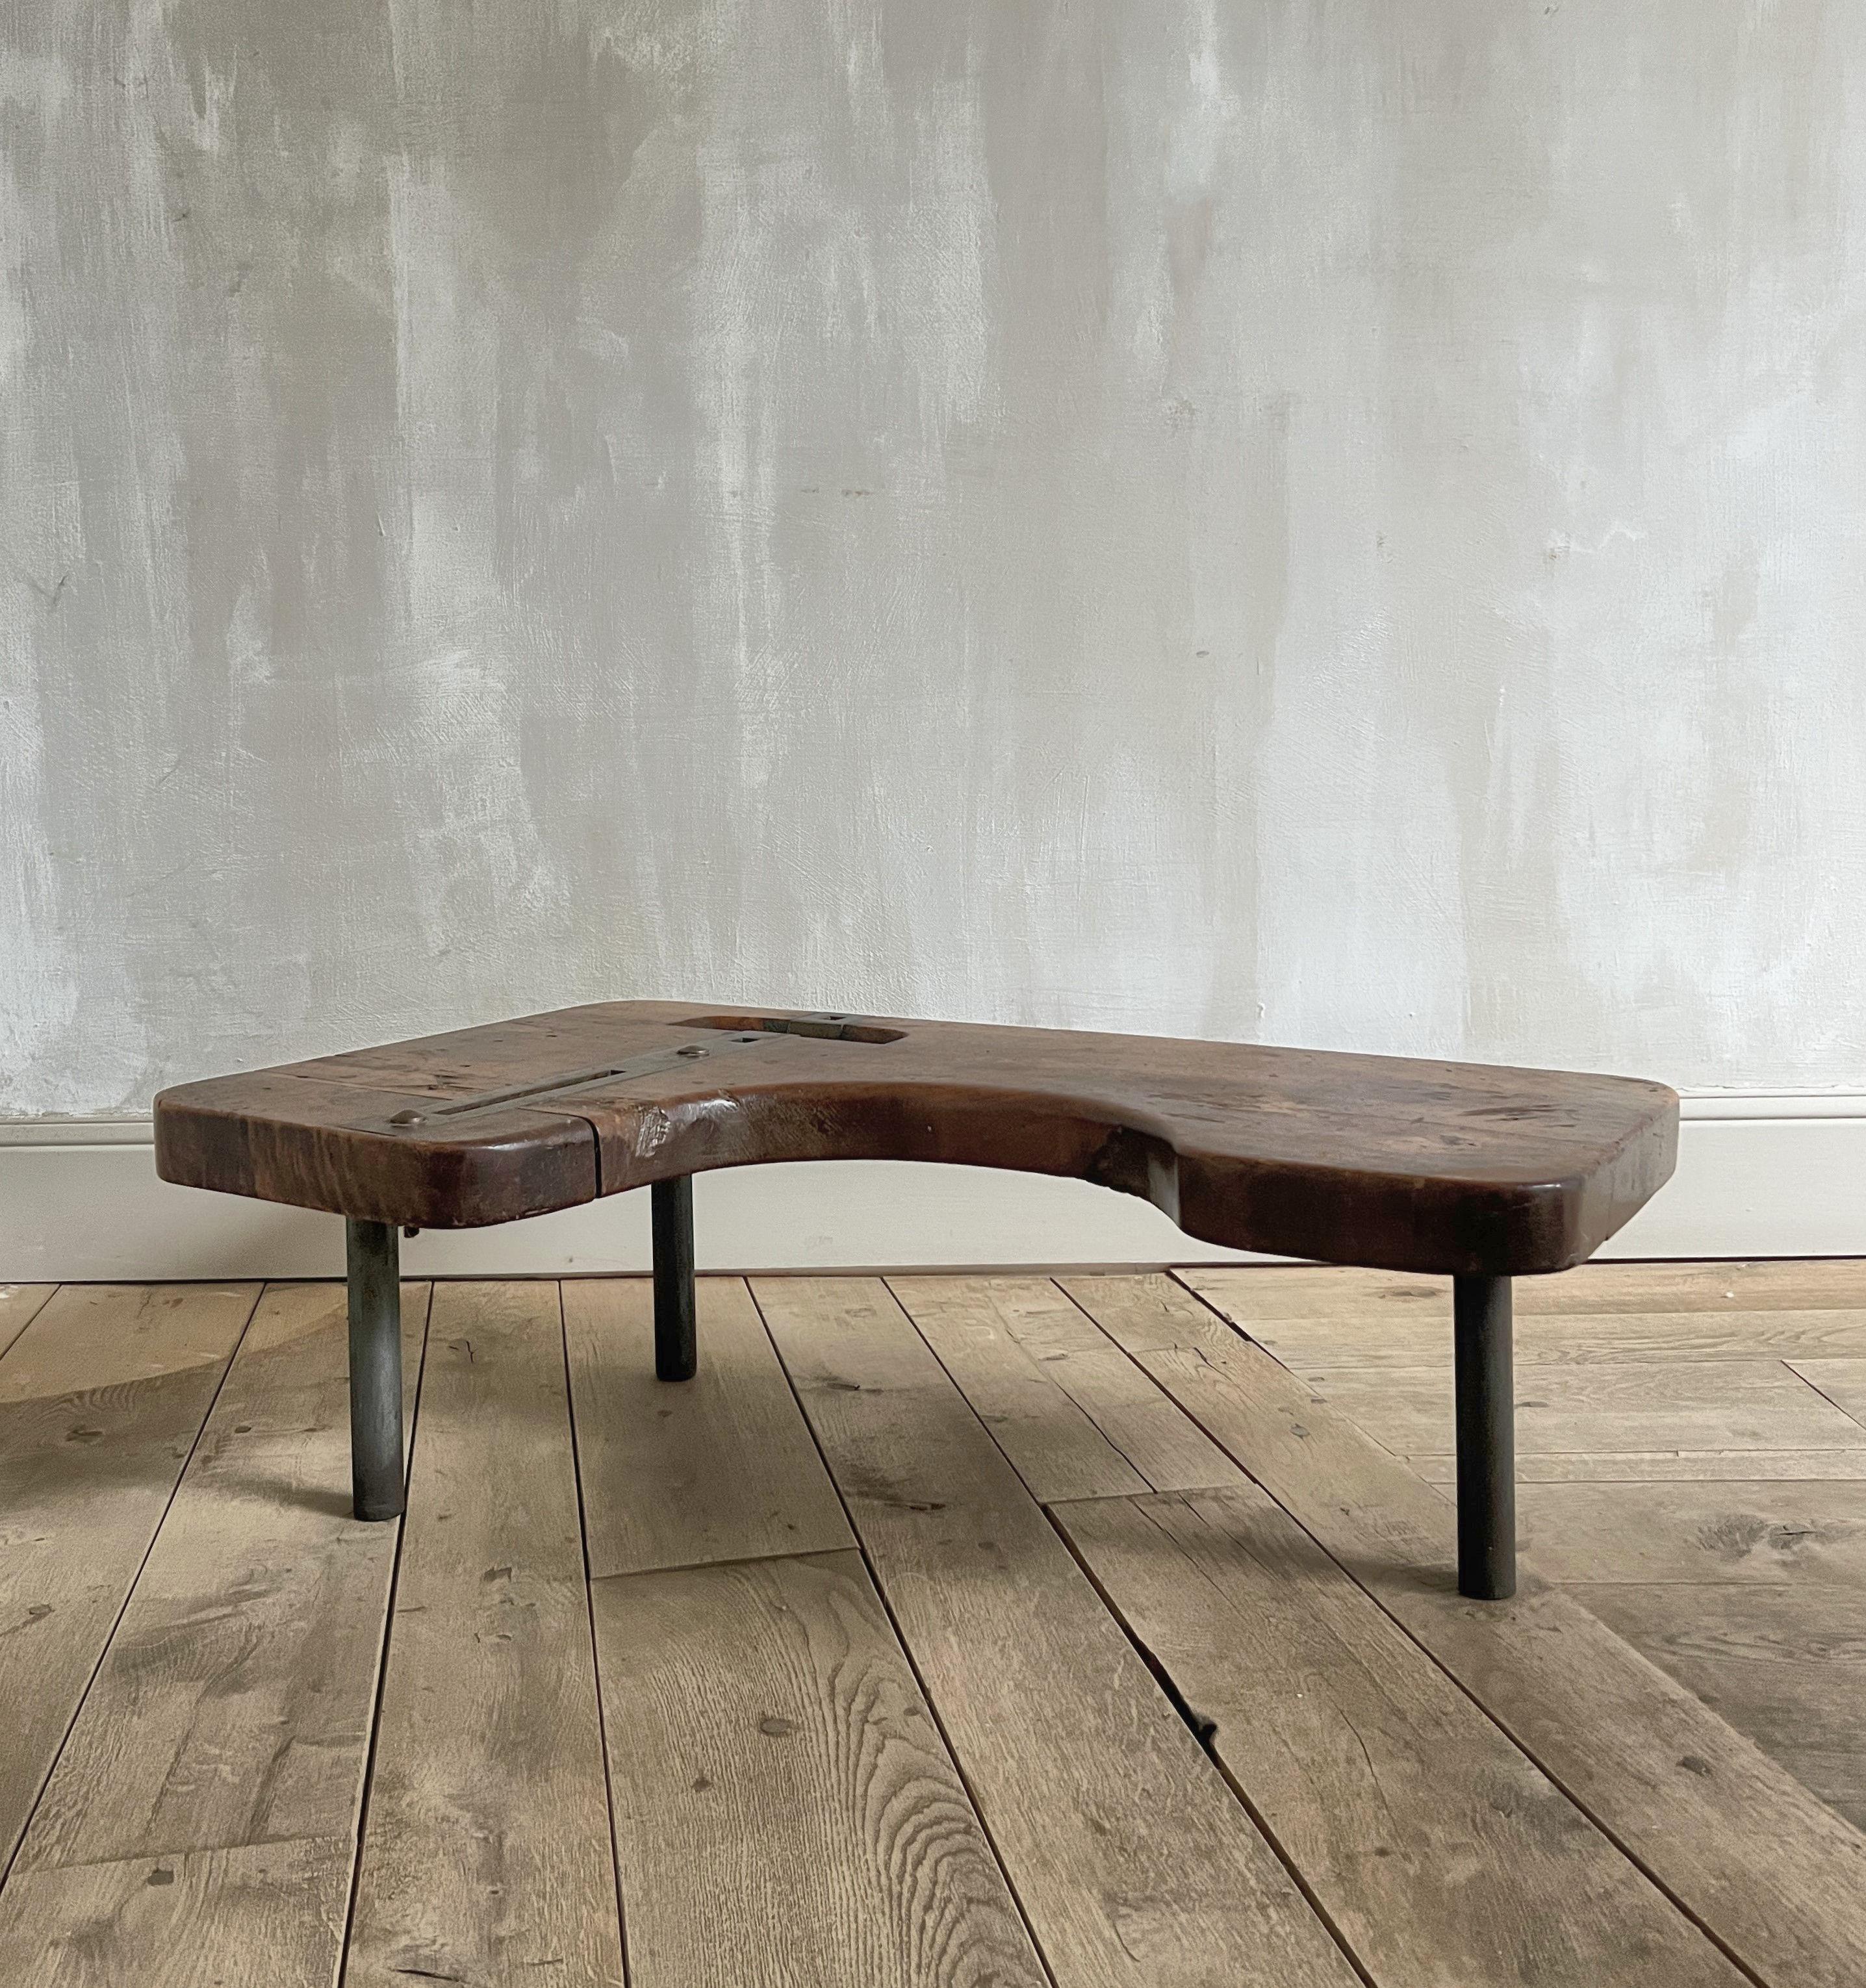 Nous avons fabriqué cette table à partir d'une table de cordonnier de la fin du 18e siècle. Alors que les pieds ont été recyclés pour une grande table basse, nous avons récupéré le dessus pour l'utiliser comme table d'appoint ou table basse. Nous